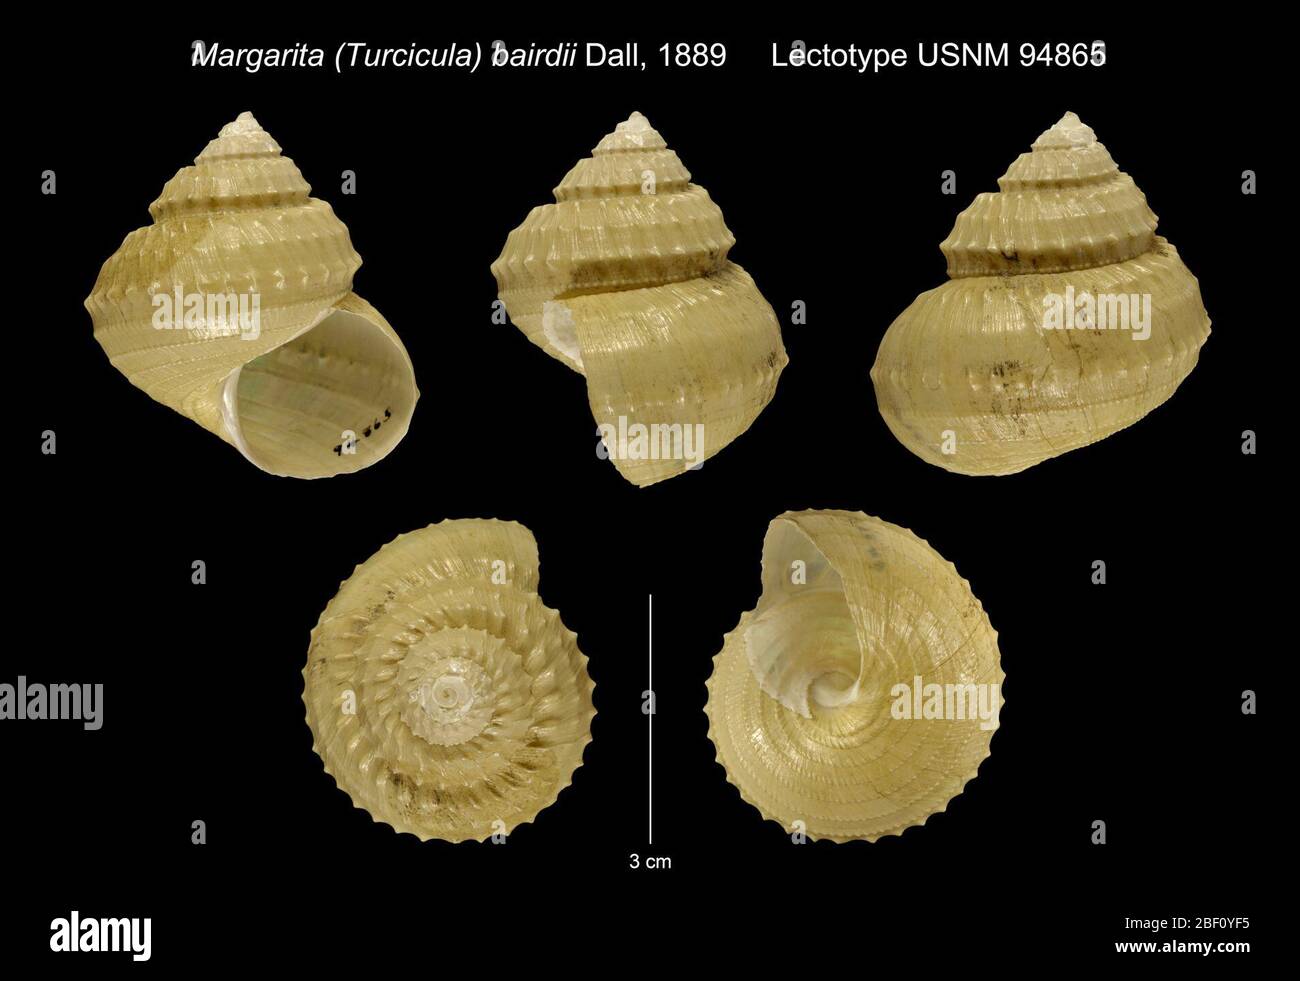 Margarita Turcicula bairdii. Lectotype seleccionado por McLean en Keen (1971), sea Shells of Tropical West America, PG. 944 (leyenda, fig. 62) como "holotipo". Paralectotypes Usm 118230-2, 677109, 887467; MCZ 187483. Localidad especificada por Dall (1890:346-348) como Usfc 2839.30 Mar 201728391 Foto de stock